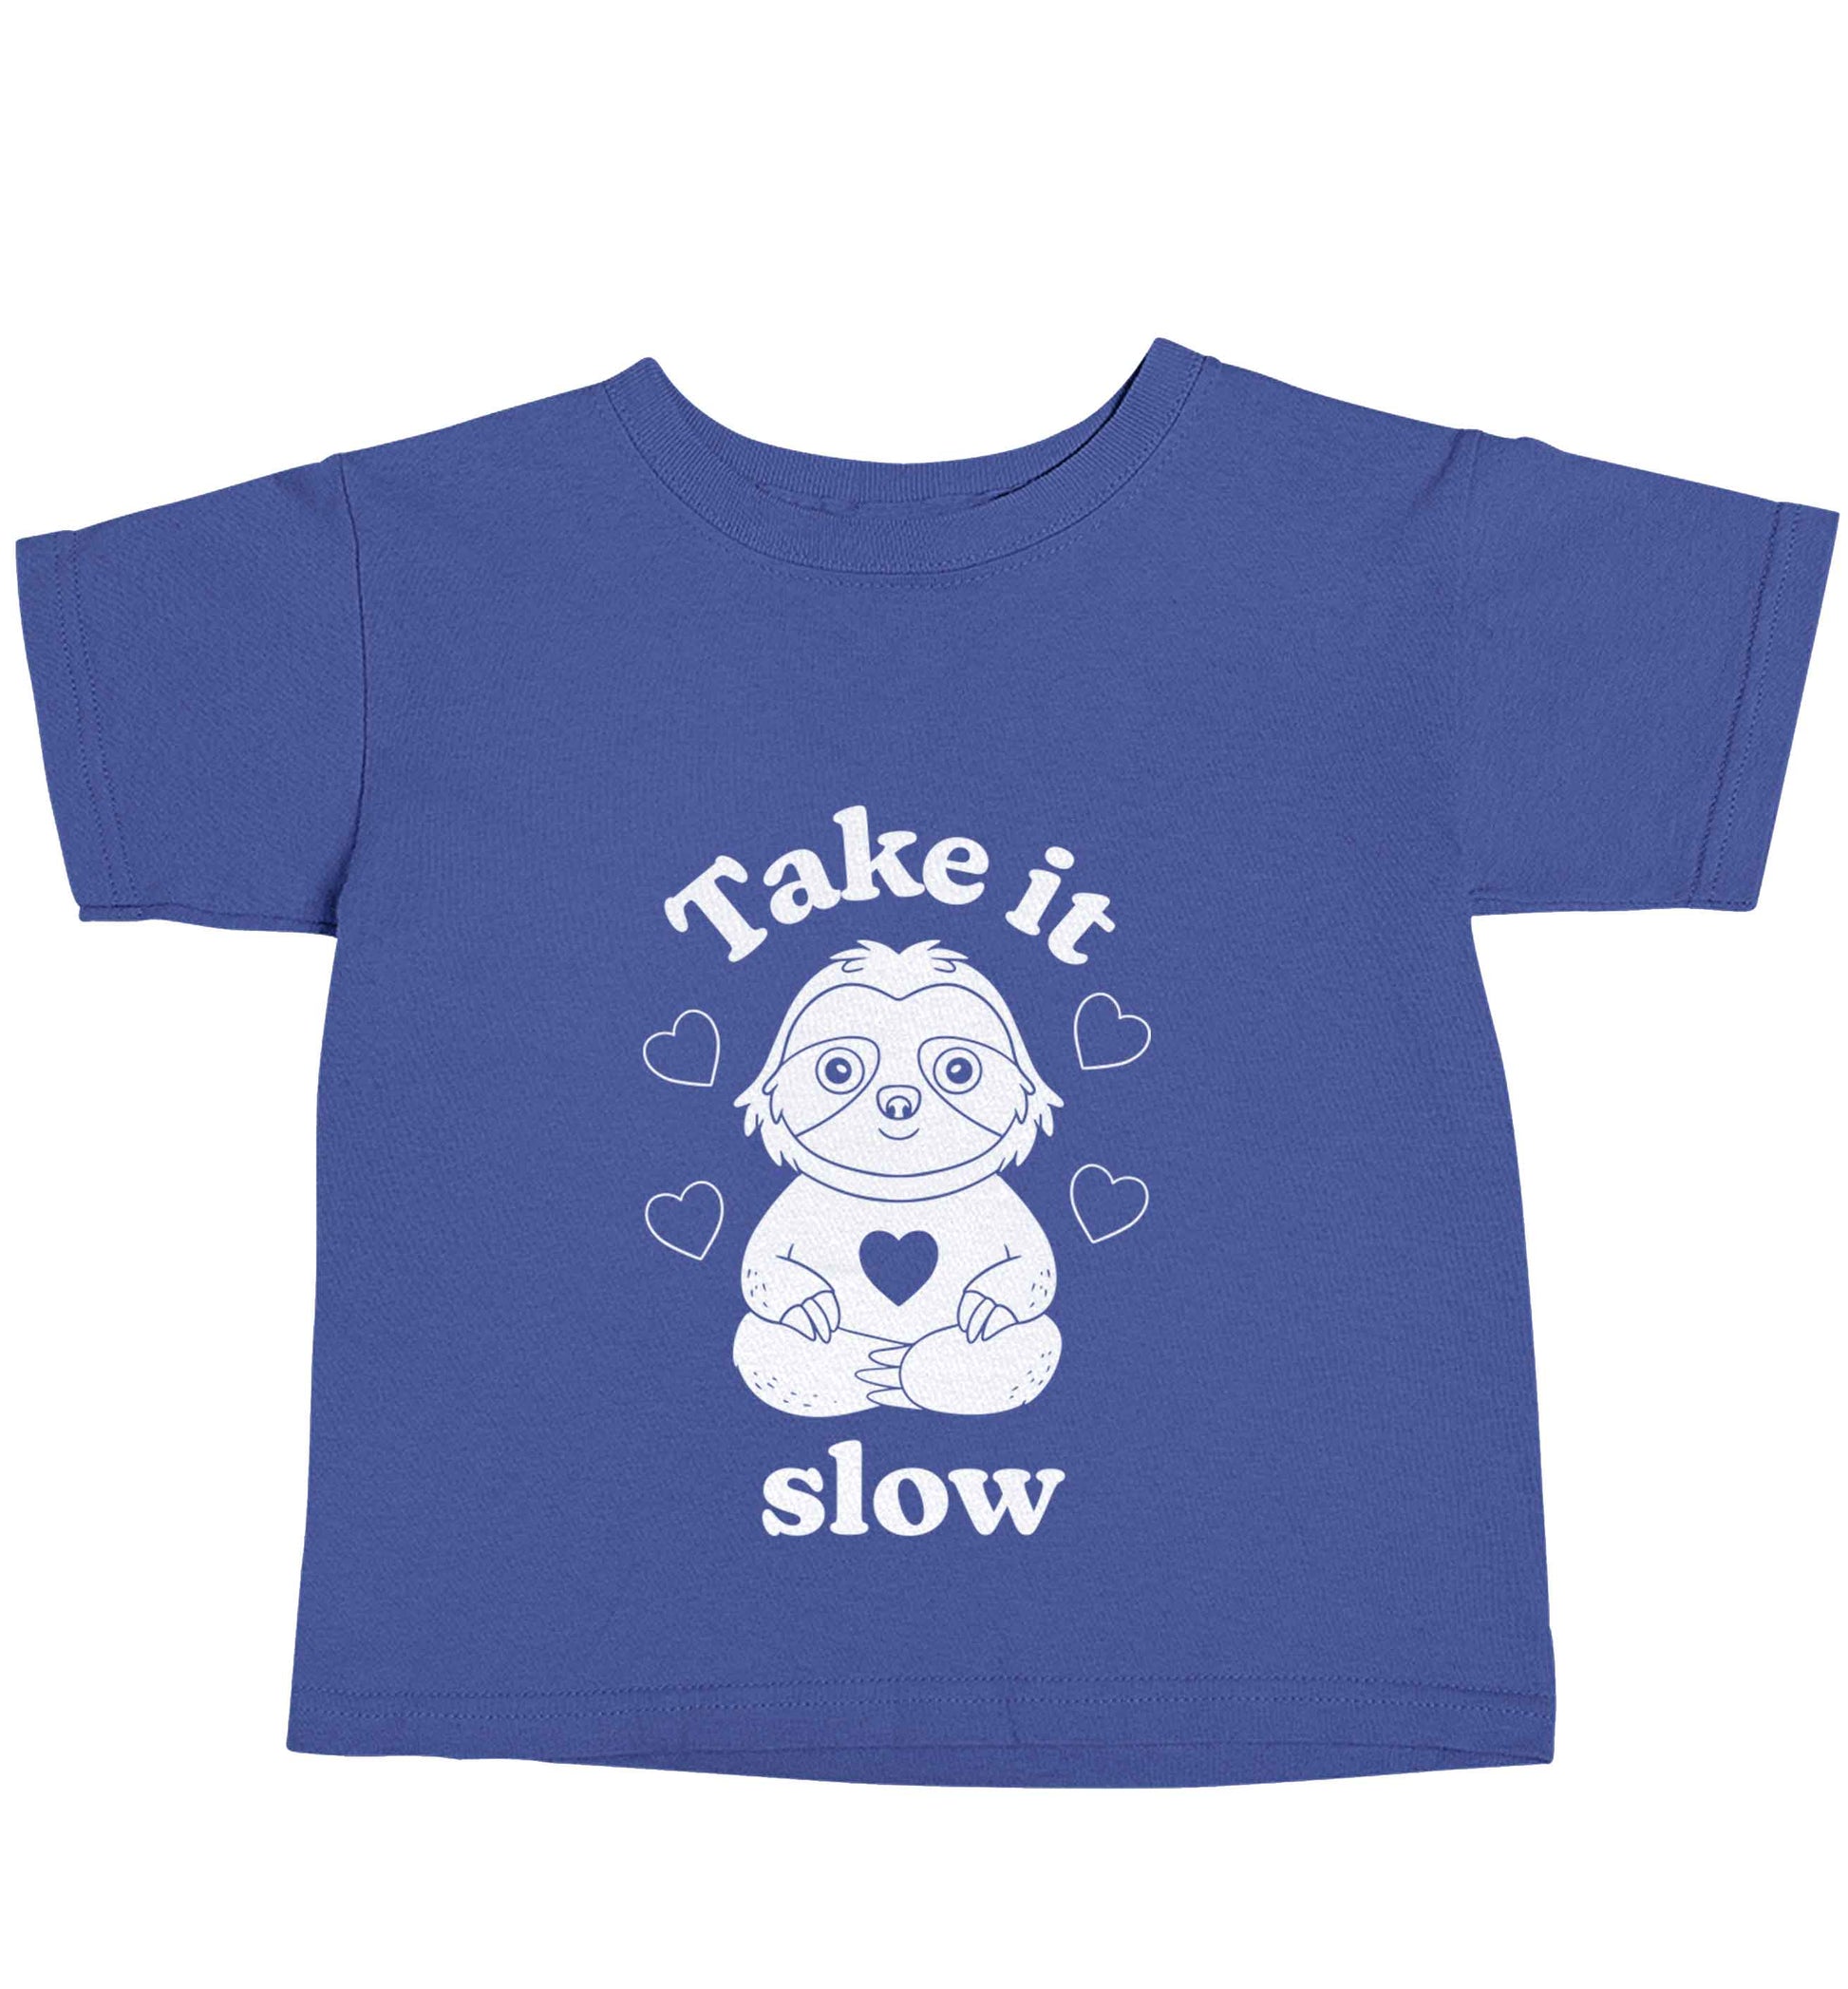 Take it slow blue baby toddler Tshirt 2 Years